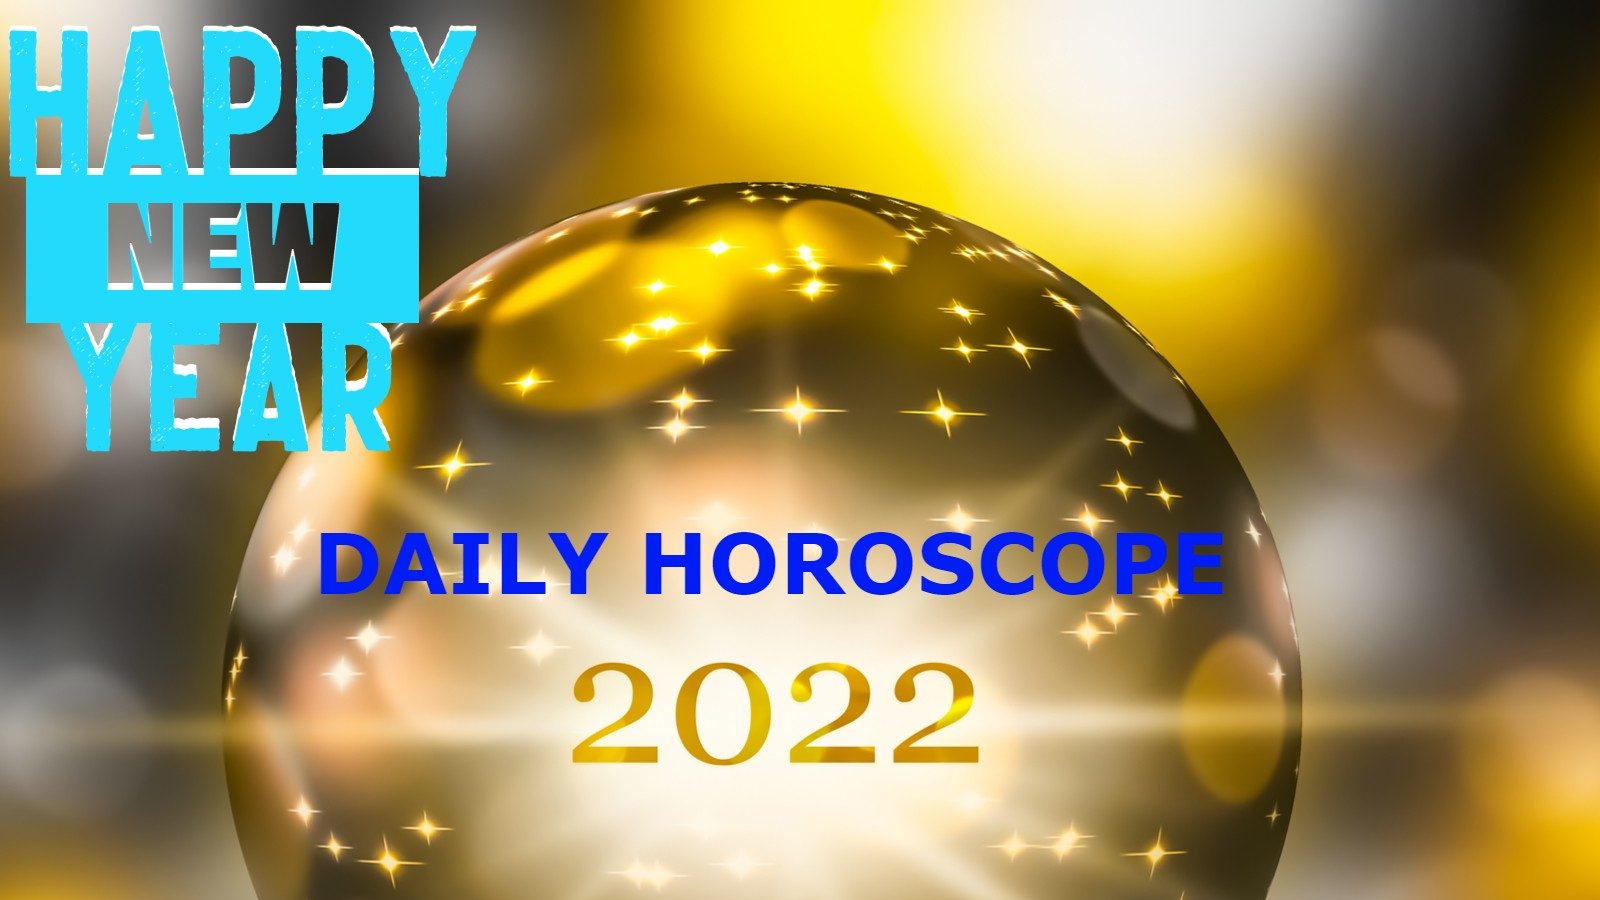 aries new year horoscope 2022